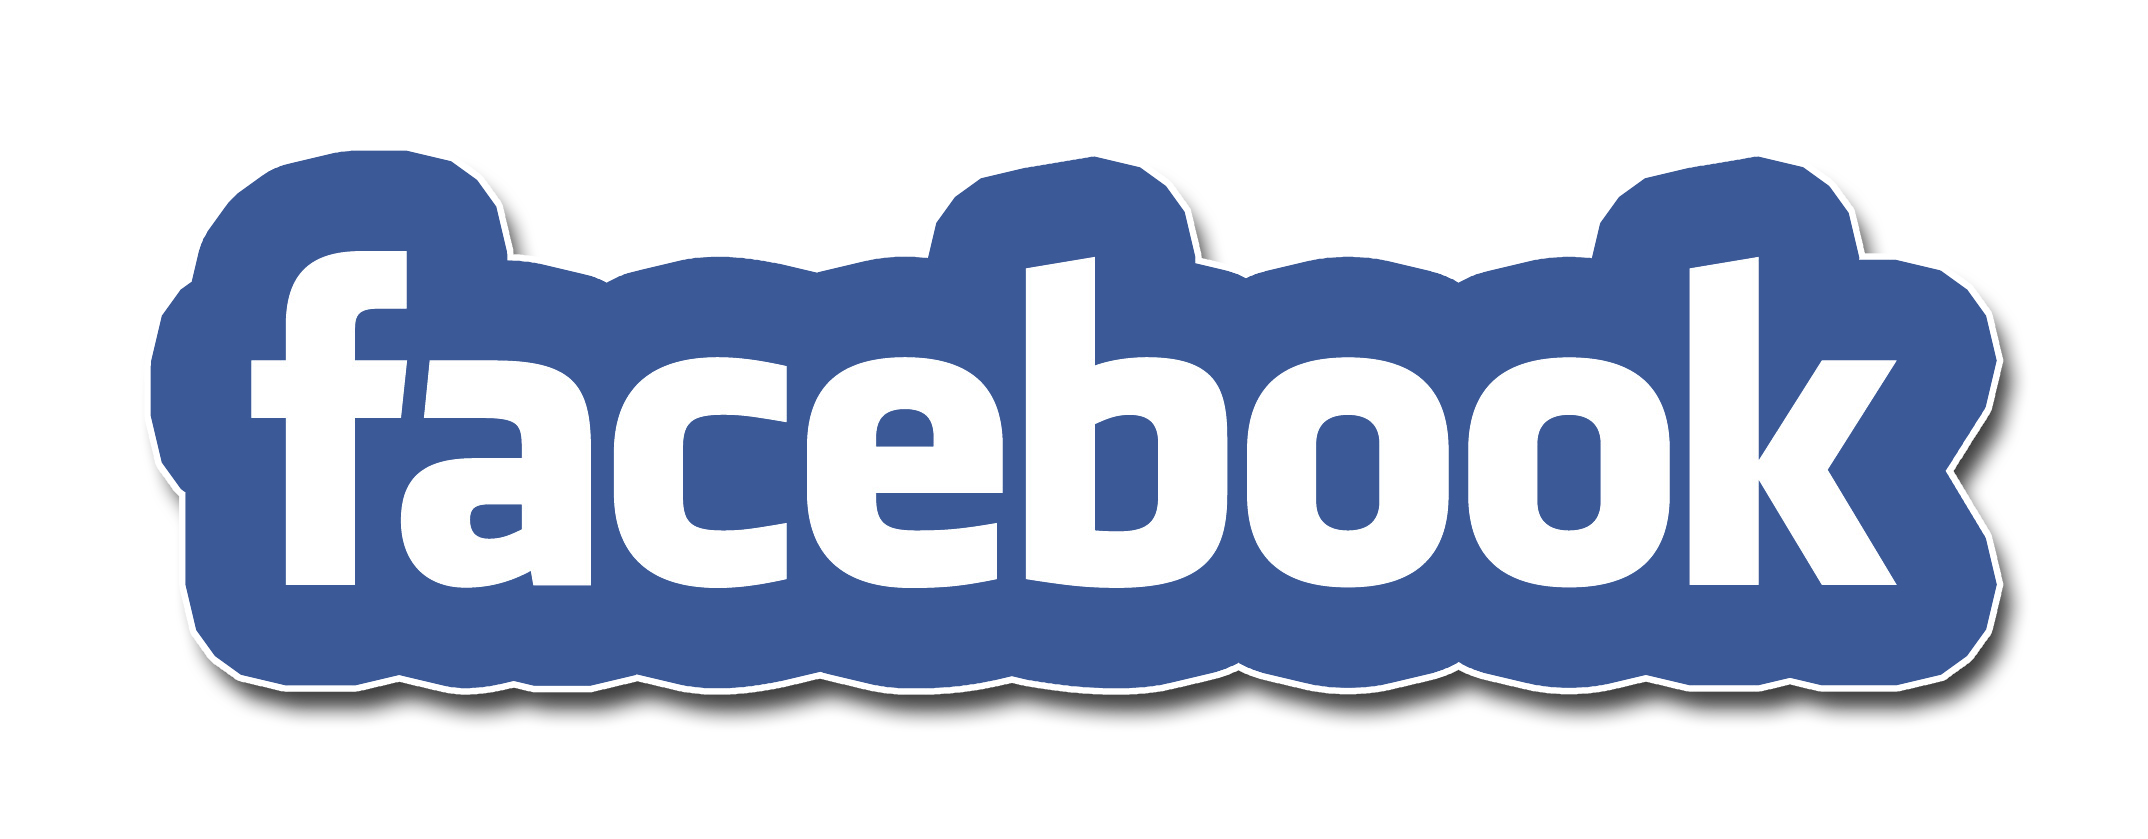 facebook text transparent logo image 38364 2148